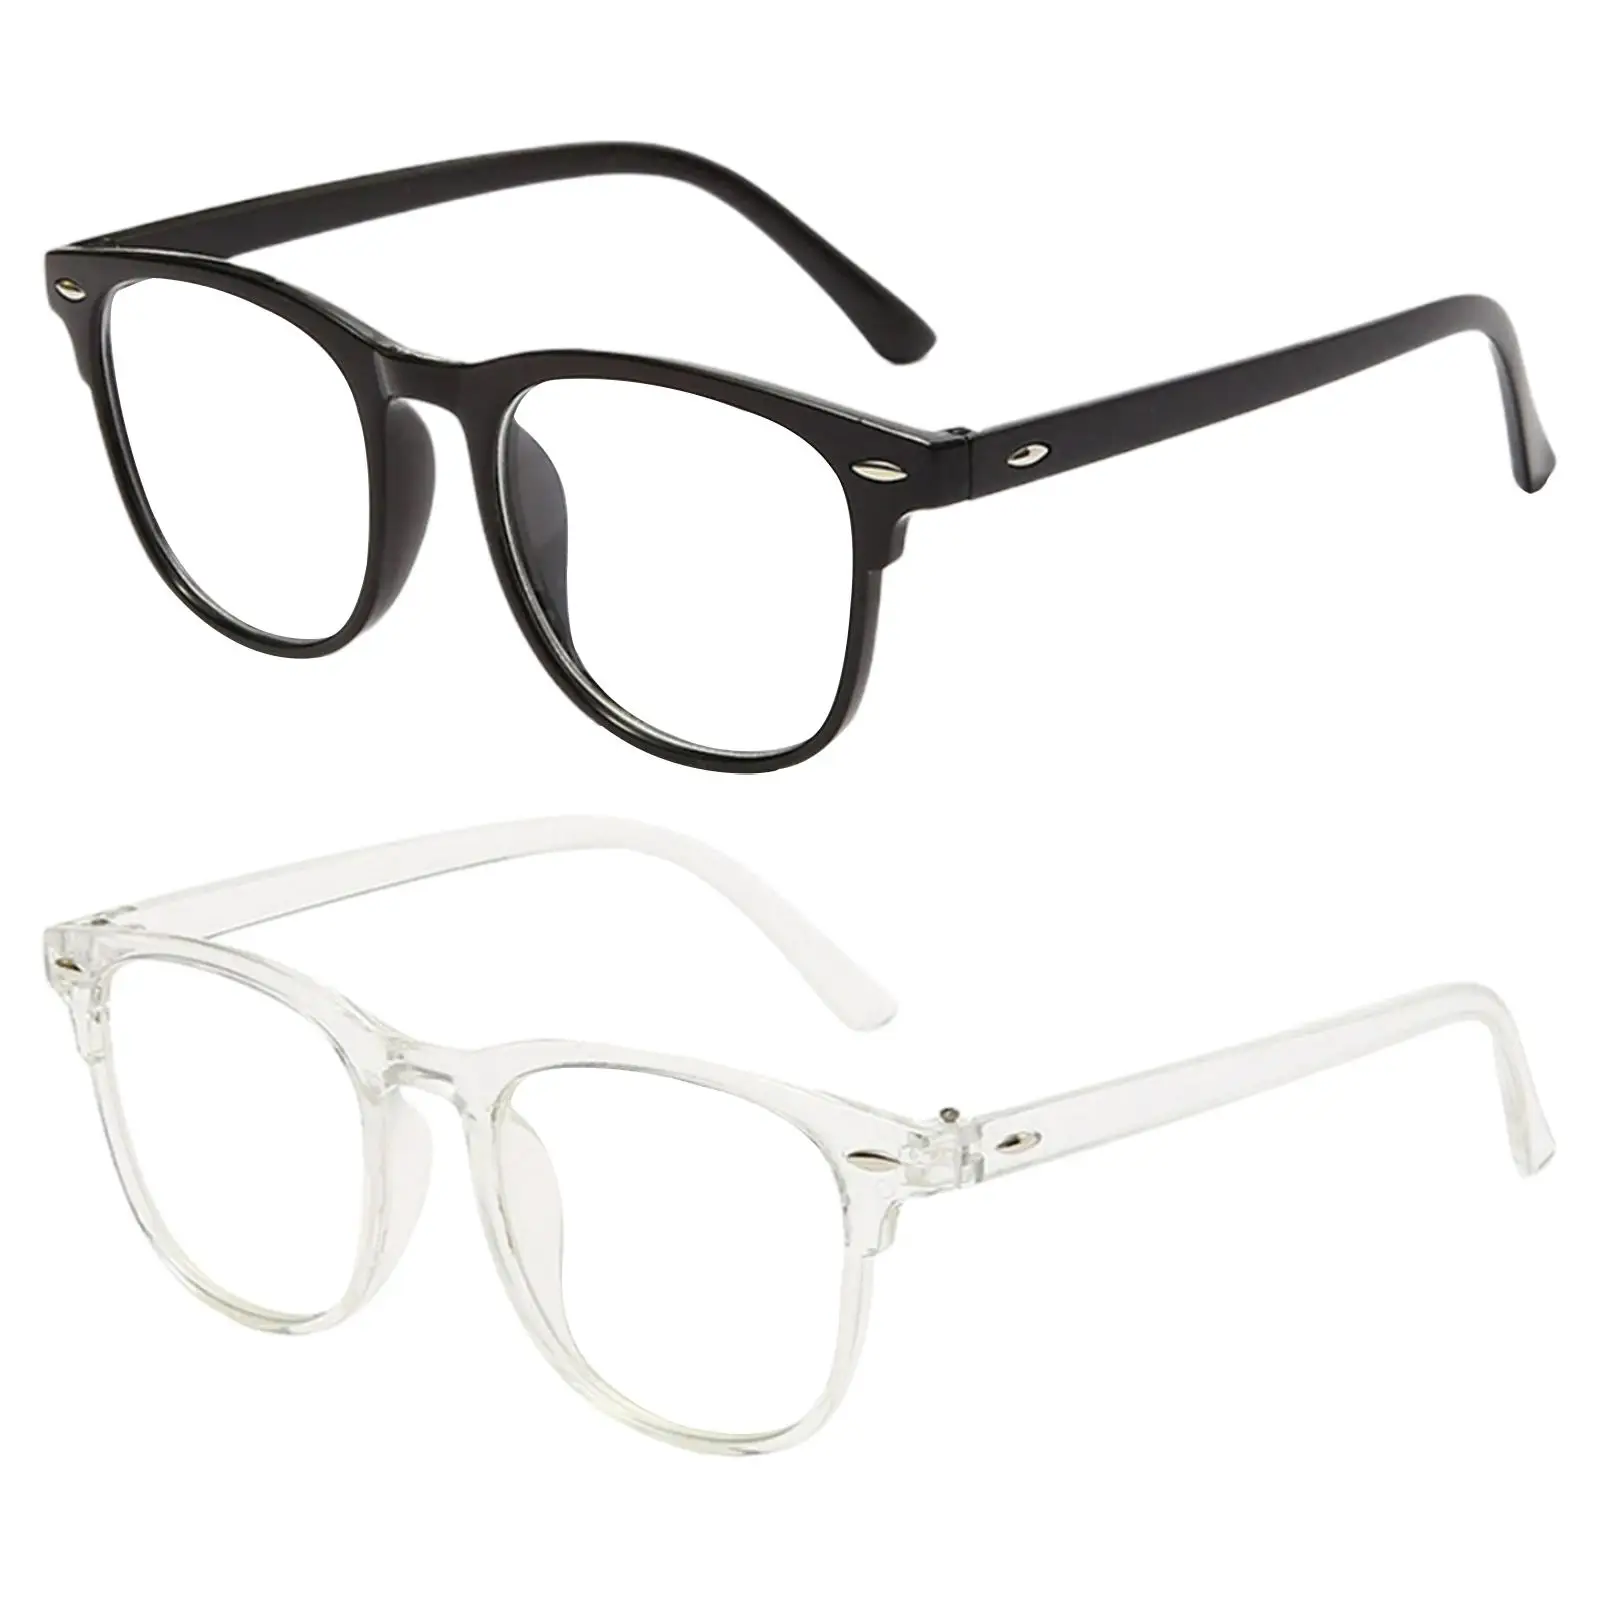 Eye Glasses Flat Lens Spectacle Frame Blue Light Blocking for Women